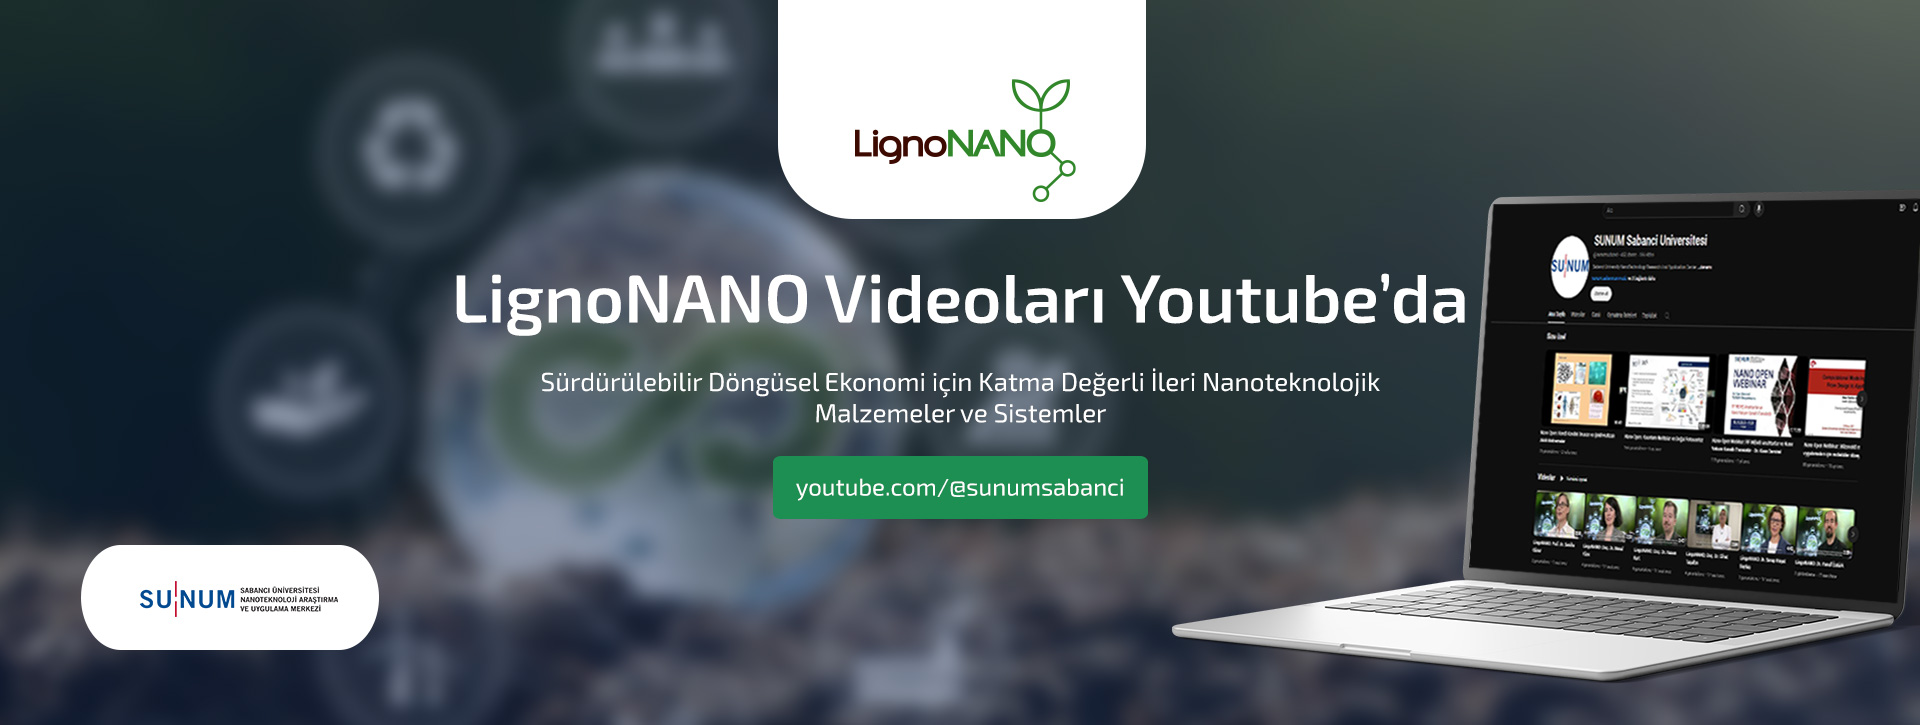 LignoNANO Videoları Youtube’da Yayında